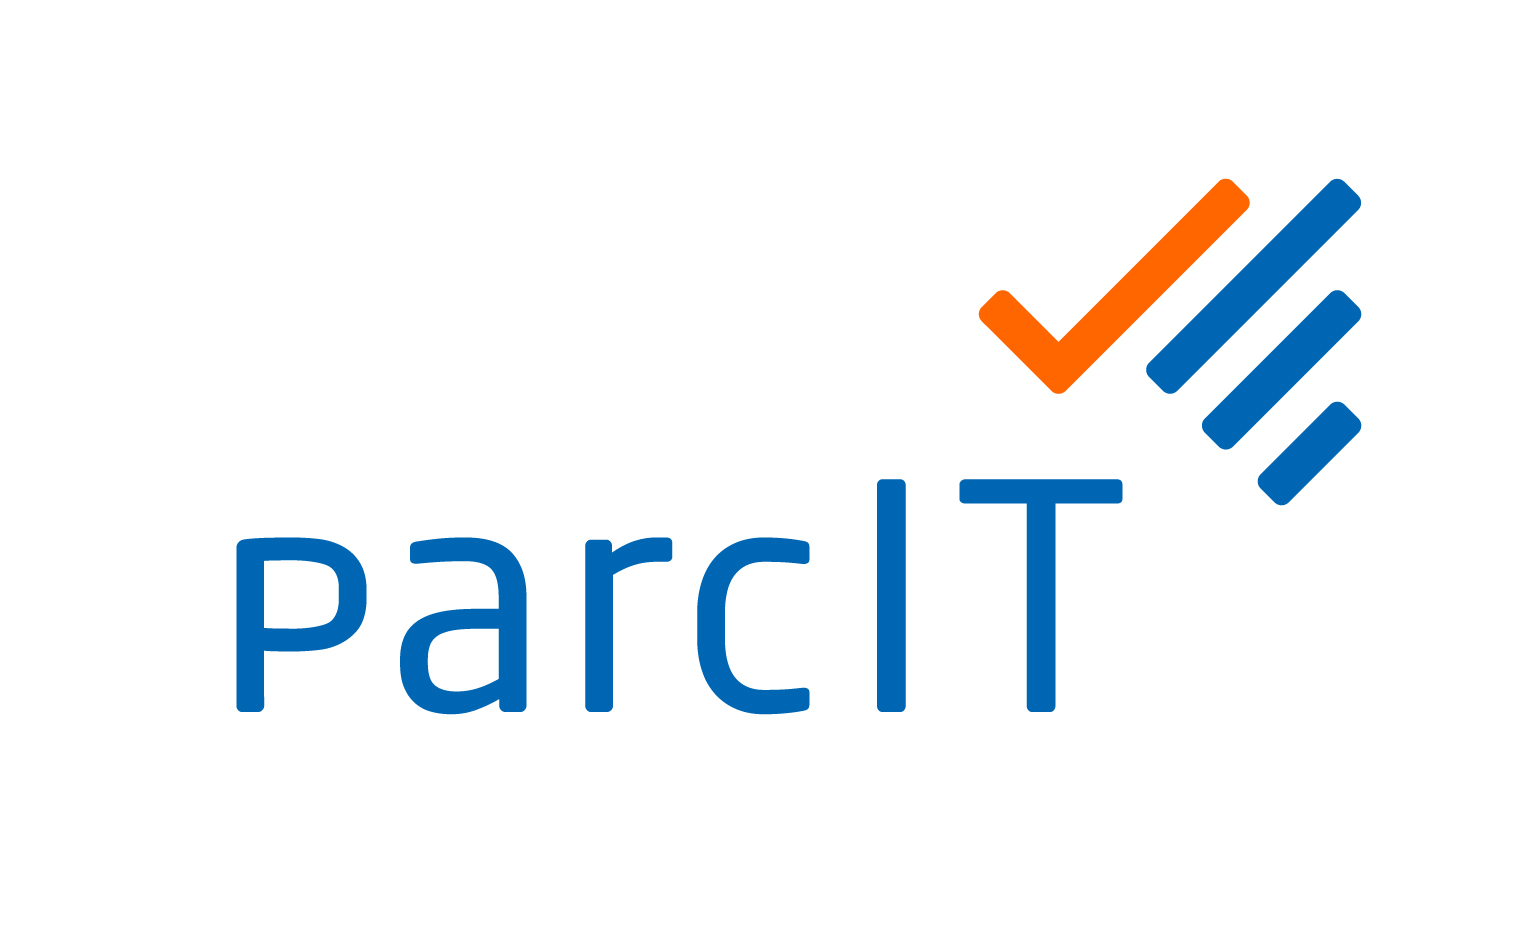 parcIT GmbH